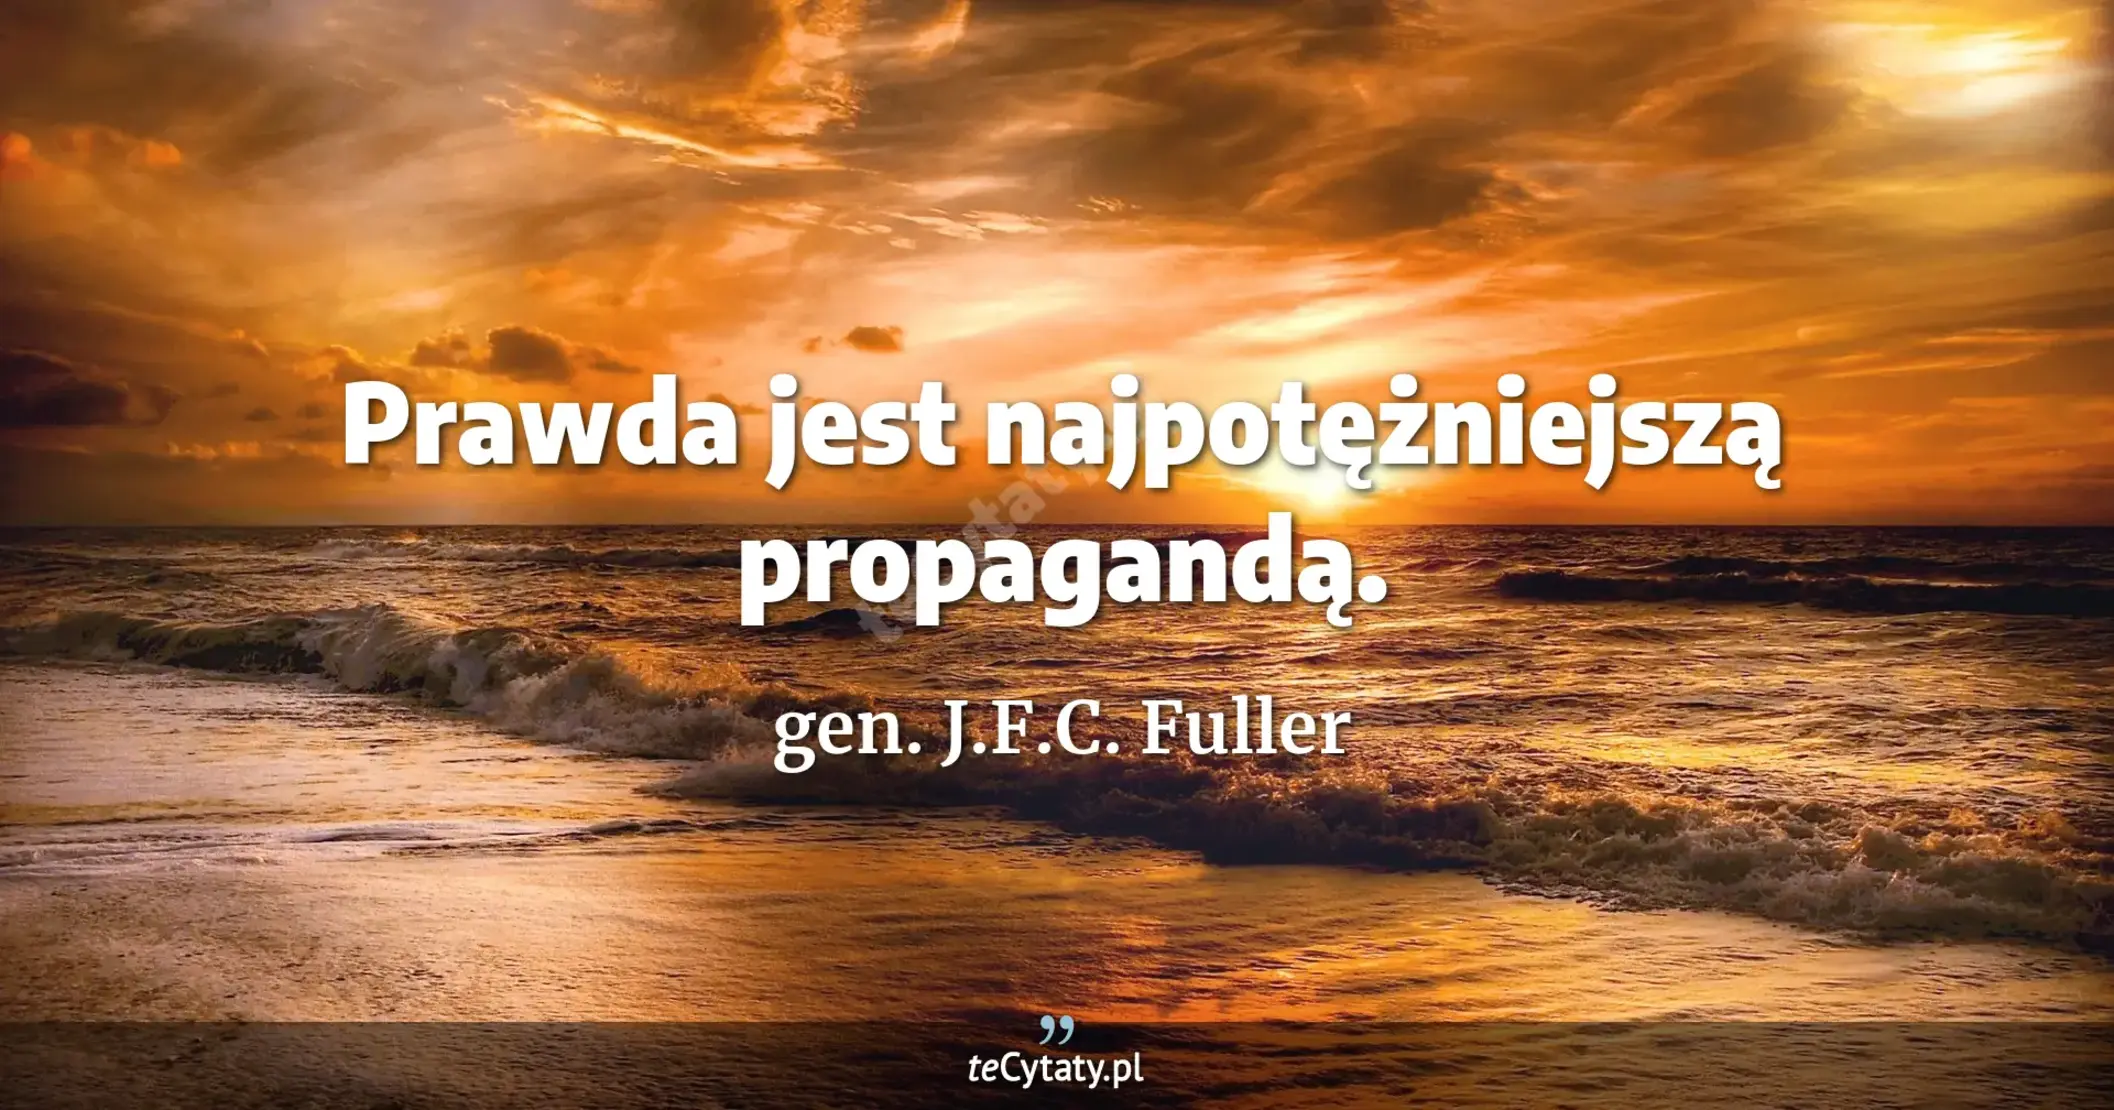 Prawda jest najpotężniejszą propagandą. - gen. J.F.C. Fuller